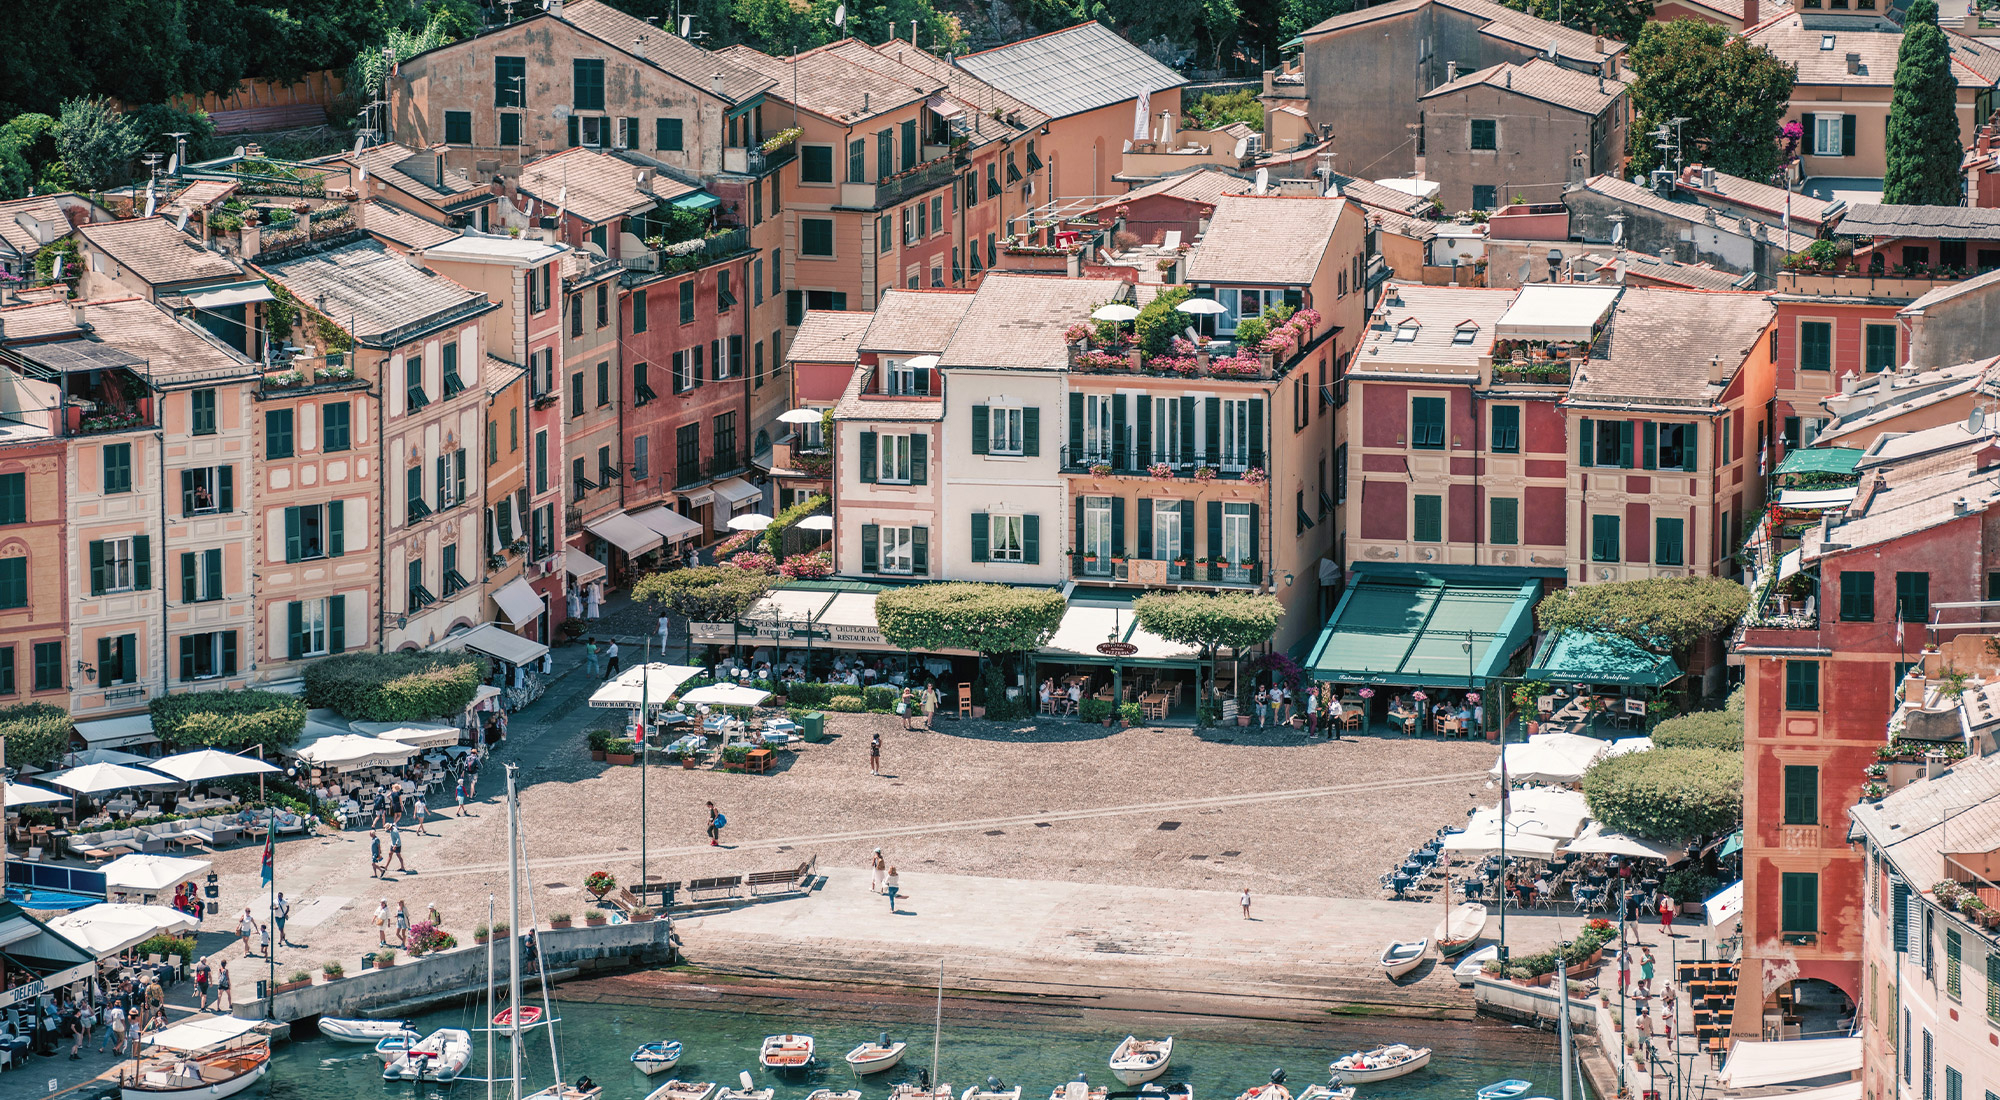 Splendido, A Belmond Hotel, Portofino in Portofino - See 2023 Prices